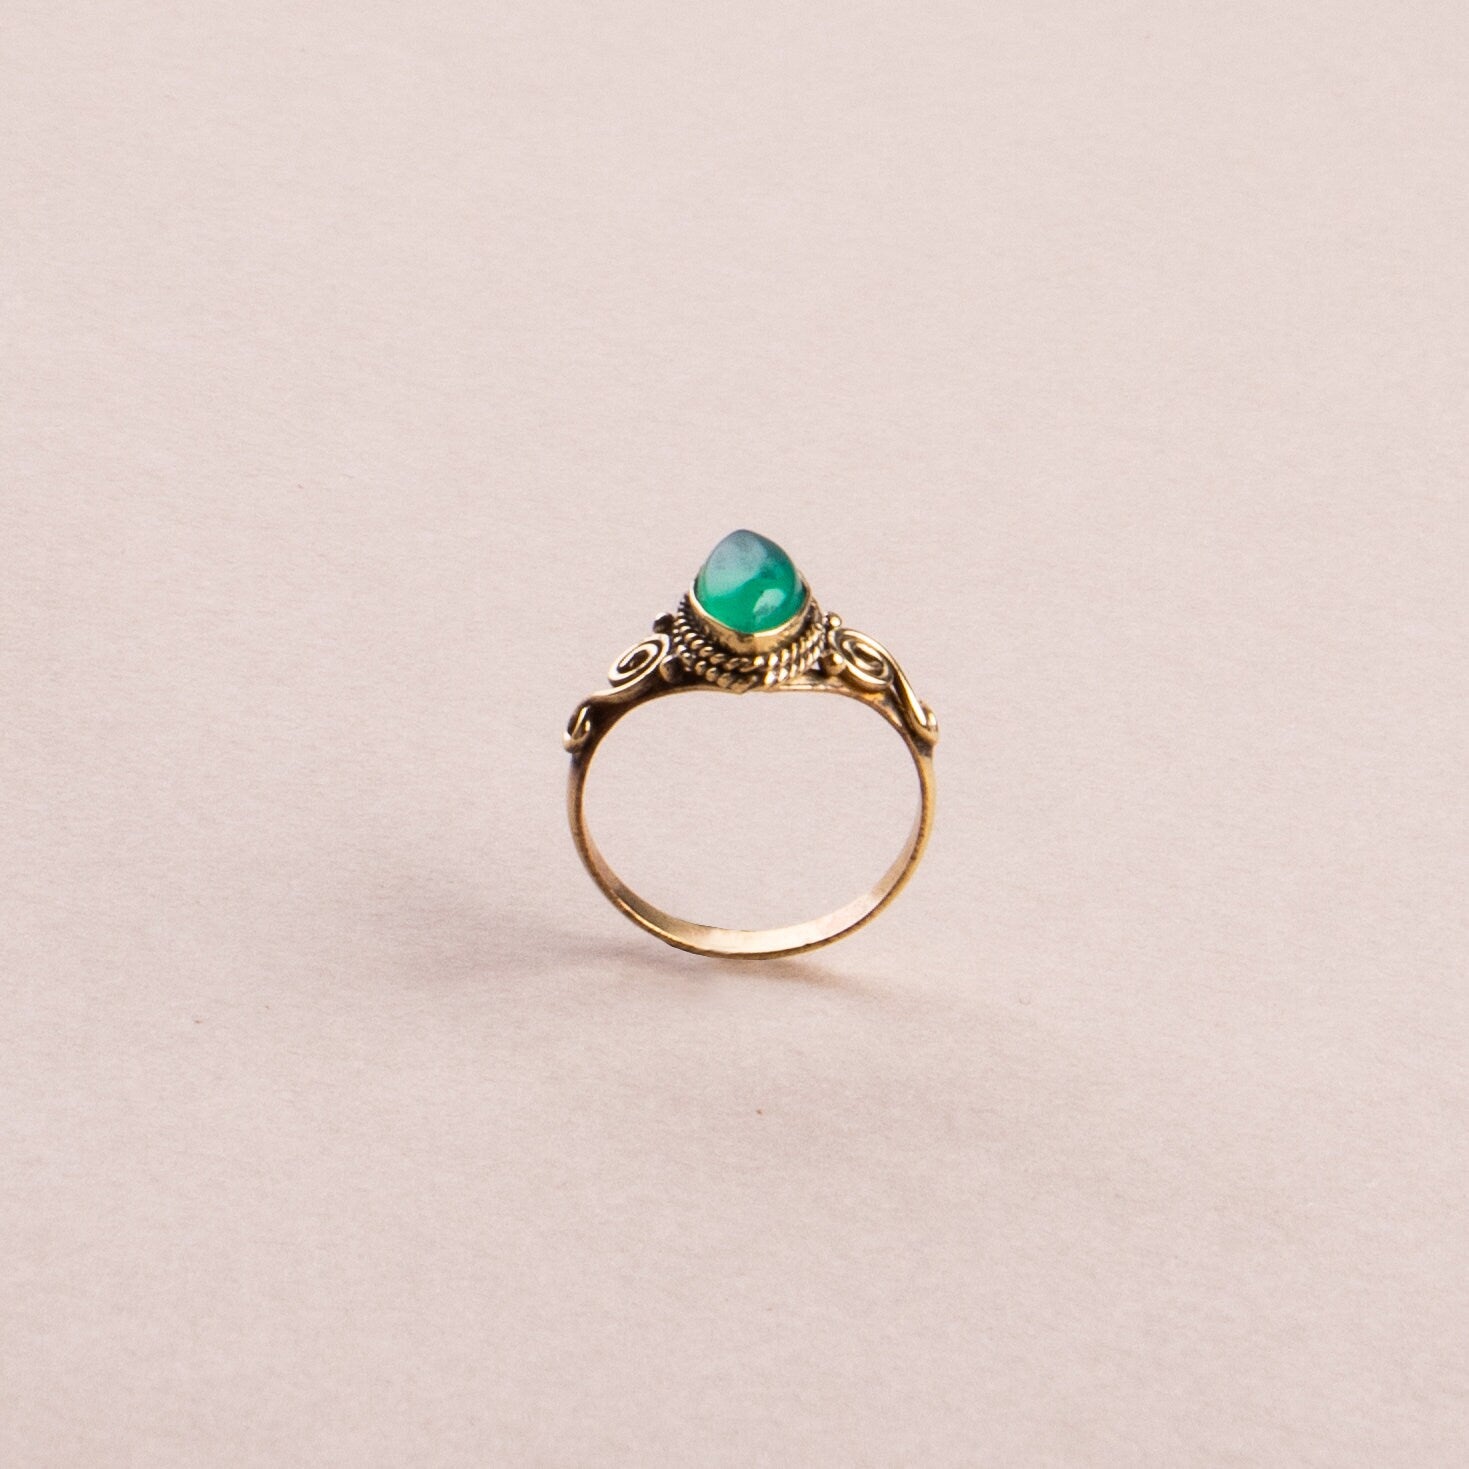 Grüner Onyx Ring mit ovalem Stein verspielt in gold handgefertigt